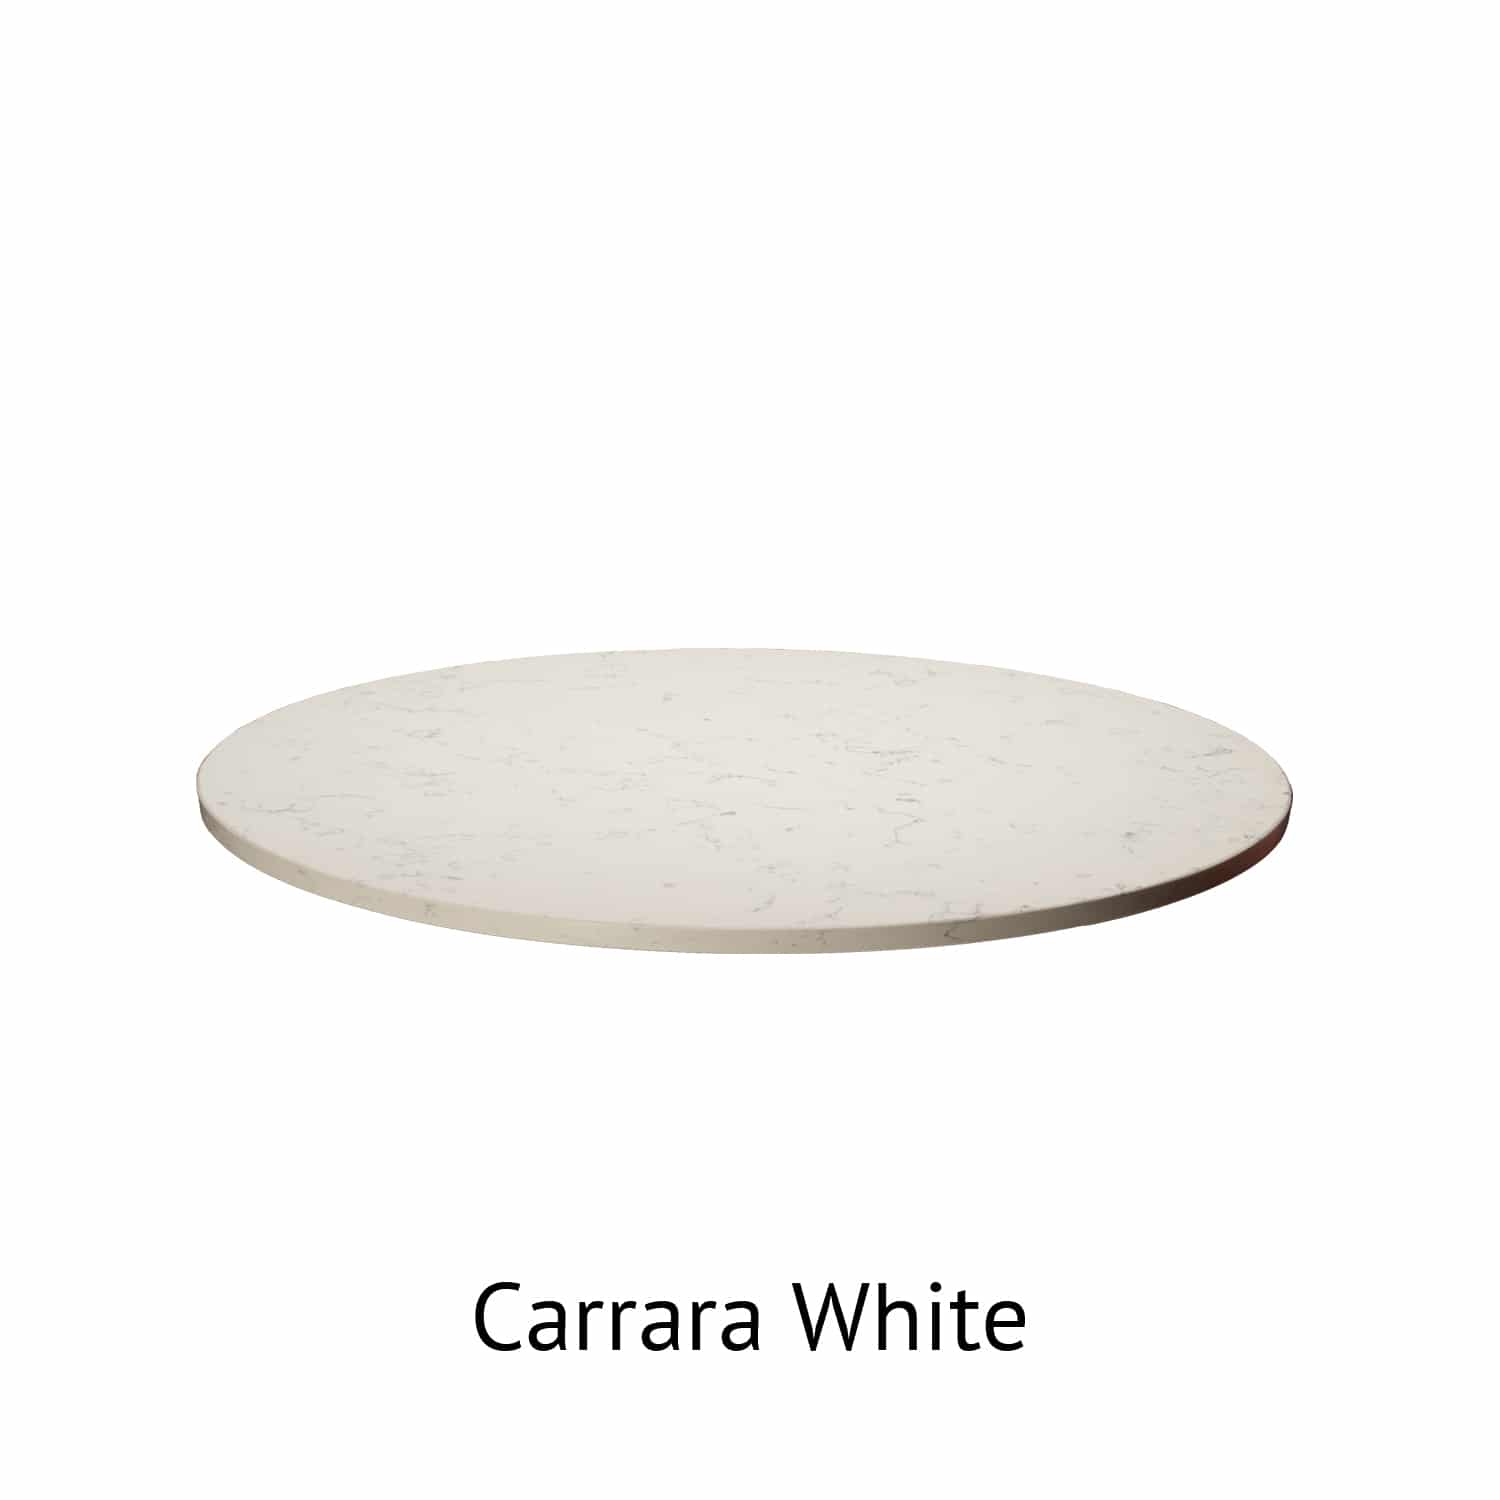 Carrara White Quartz Table Tops, Round White Table Top